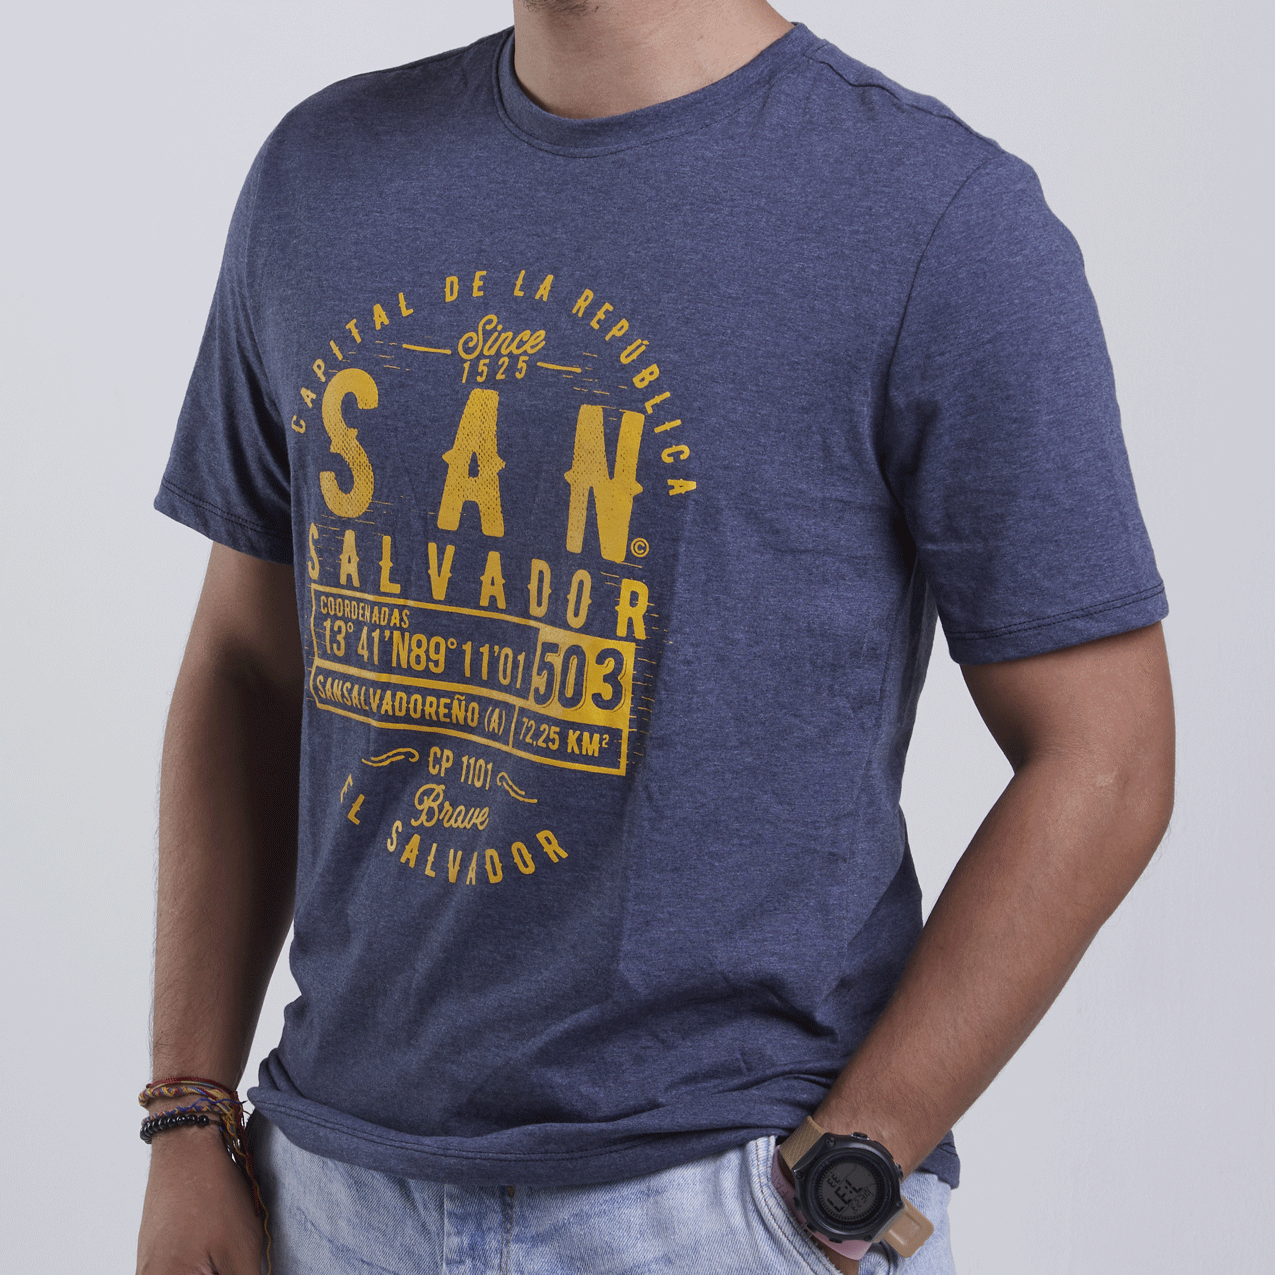 San Salvador T-shirt